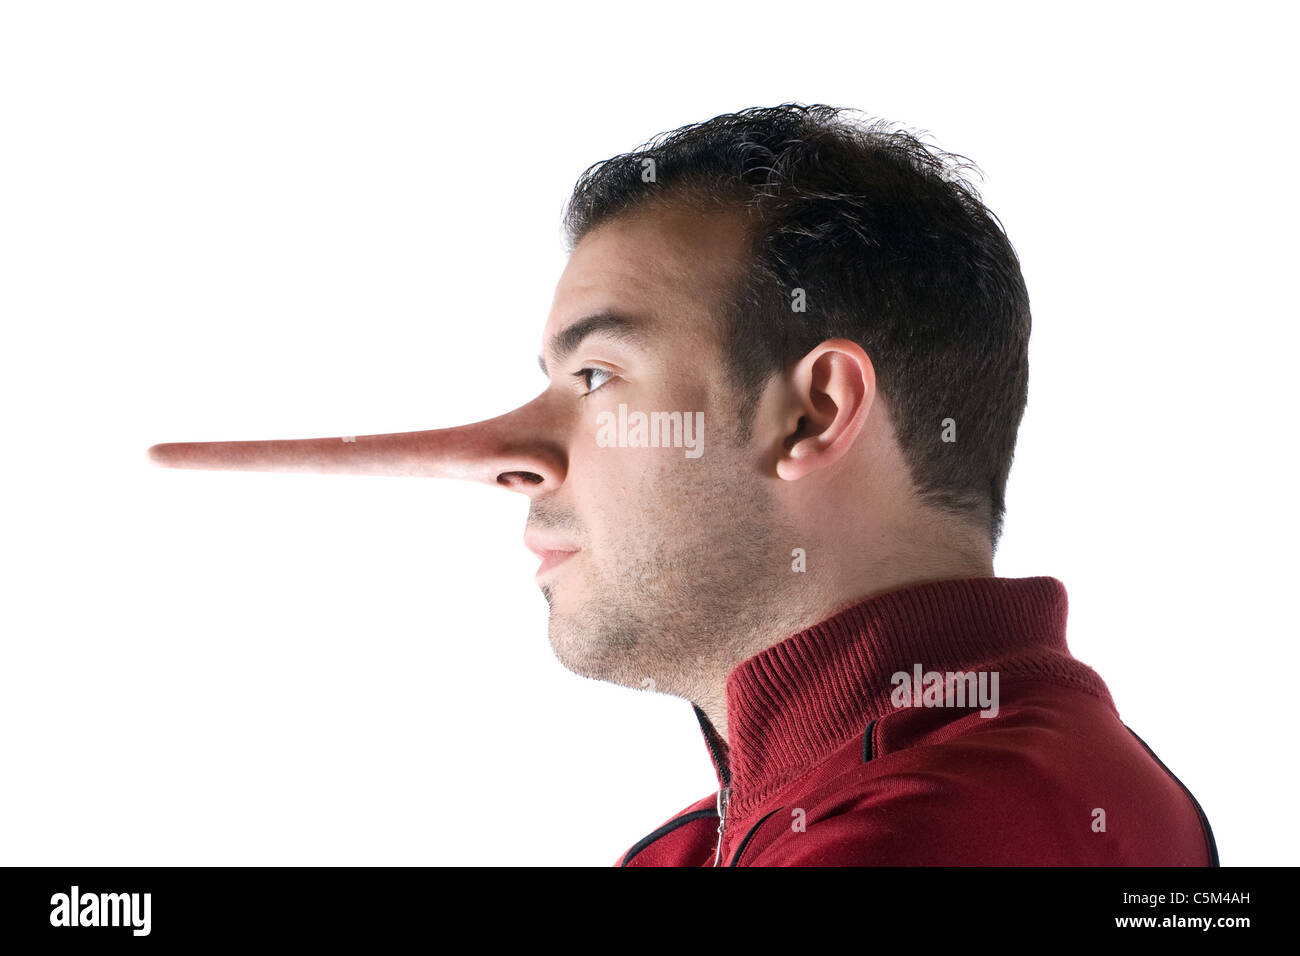 Un homme malhonnête a un nez long a grandi lorsqu'il a menti tout comme dans l'histoire de Pinocchio. Banque D'Images